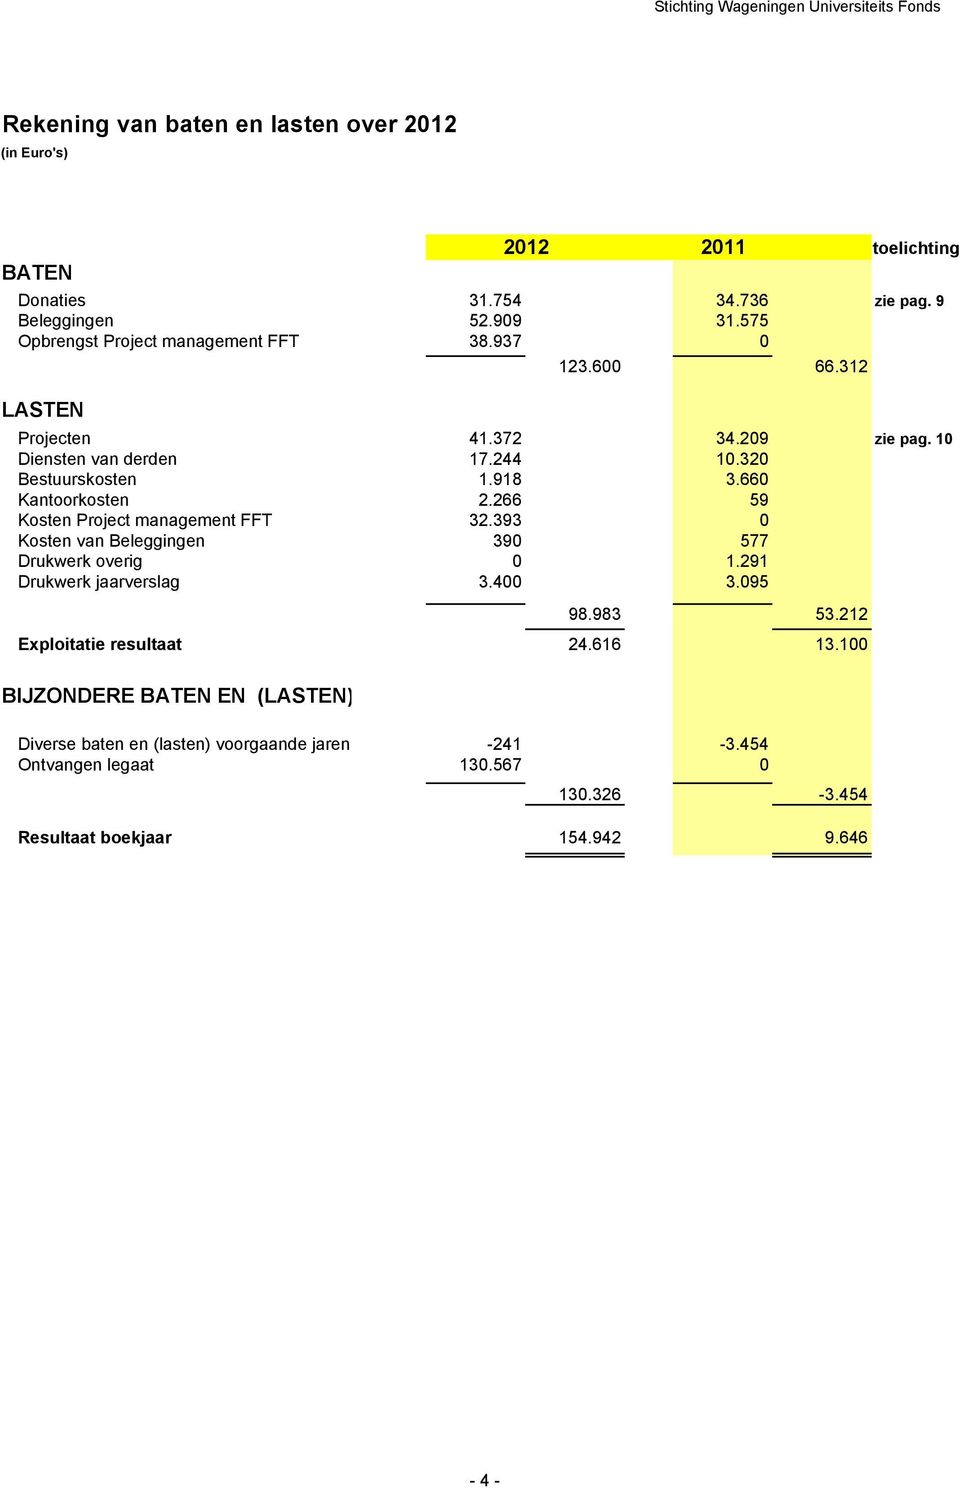 660 Kantoorkosten 2.266 59 Kosten Project management FFT 32.393 0 Kosten van Beleggingen 390 577 Drukwerk overig 0 1.291 Drukwerk jaarverslag 3.400 3.095 98.983 53.